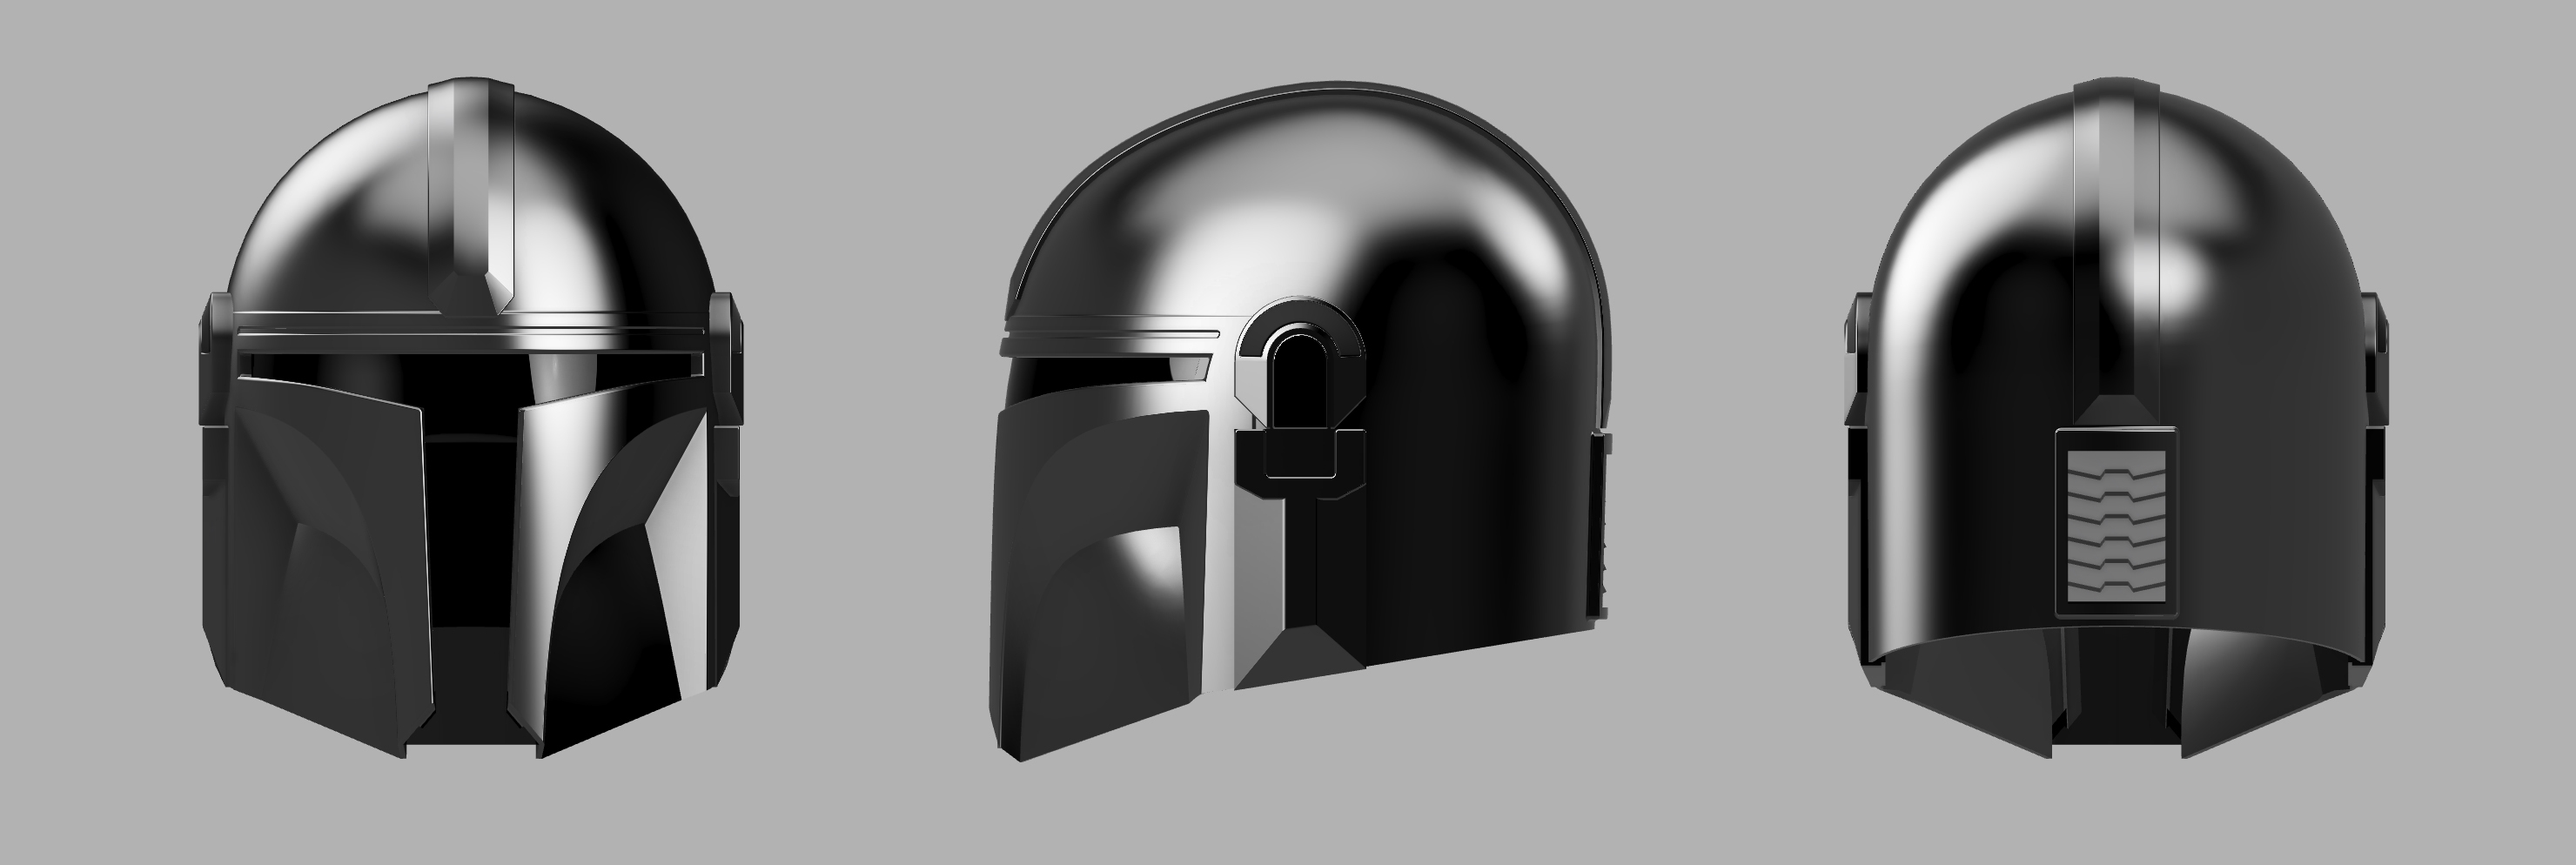 曼达洛人头盔3d模型3